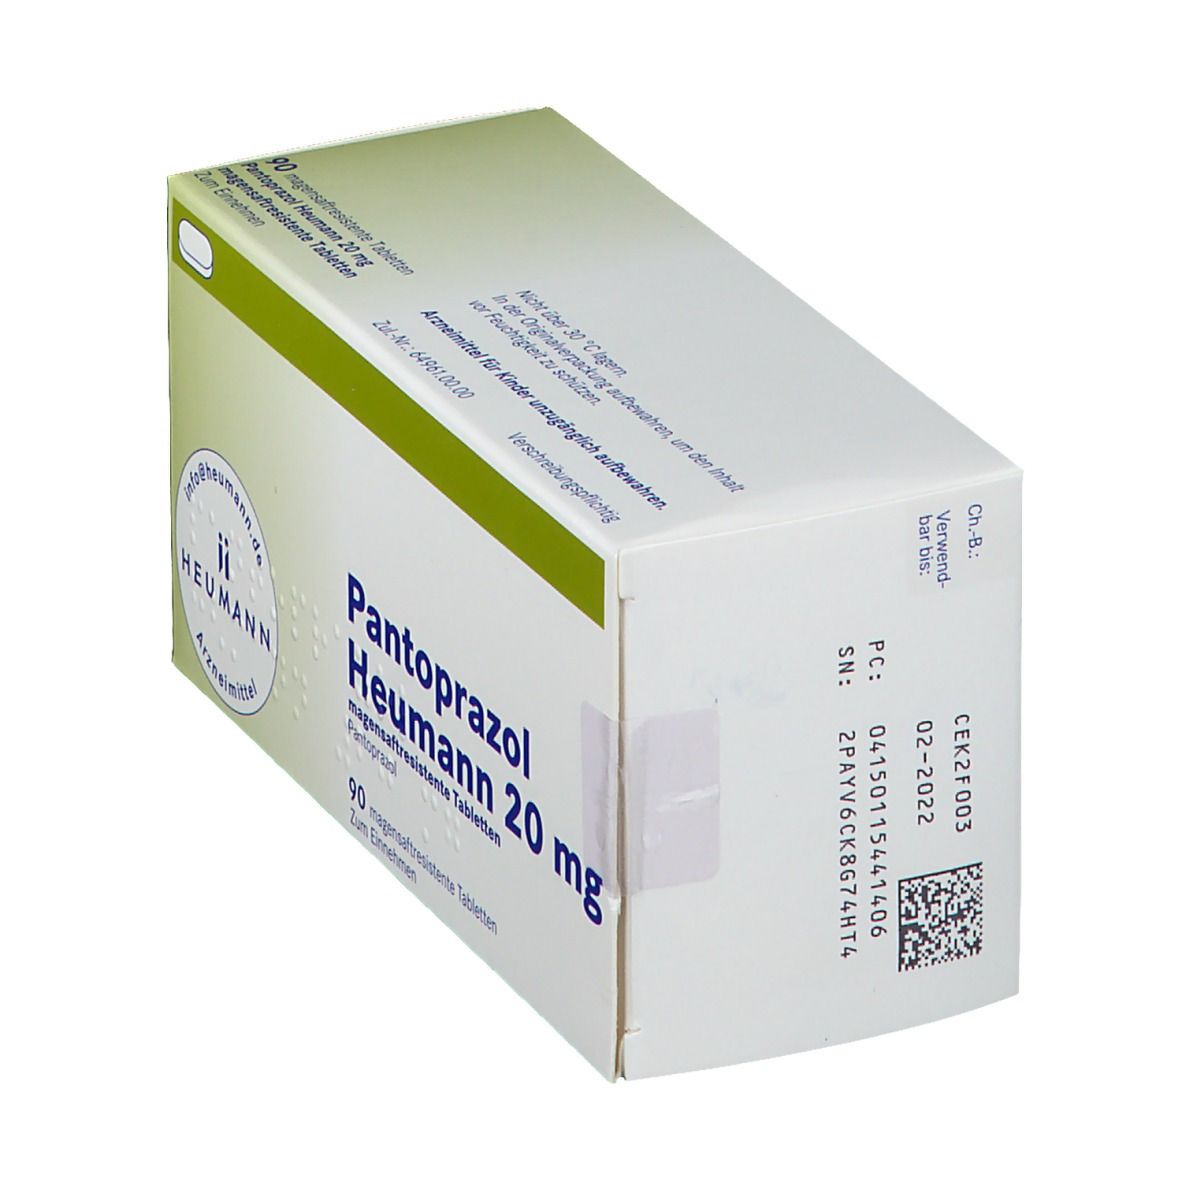 Pantoprazol Heumann 20 mg